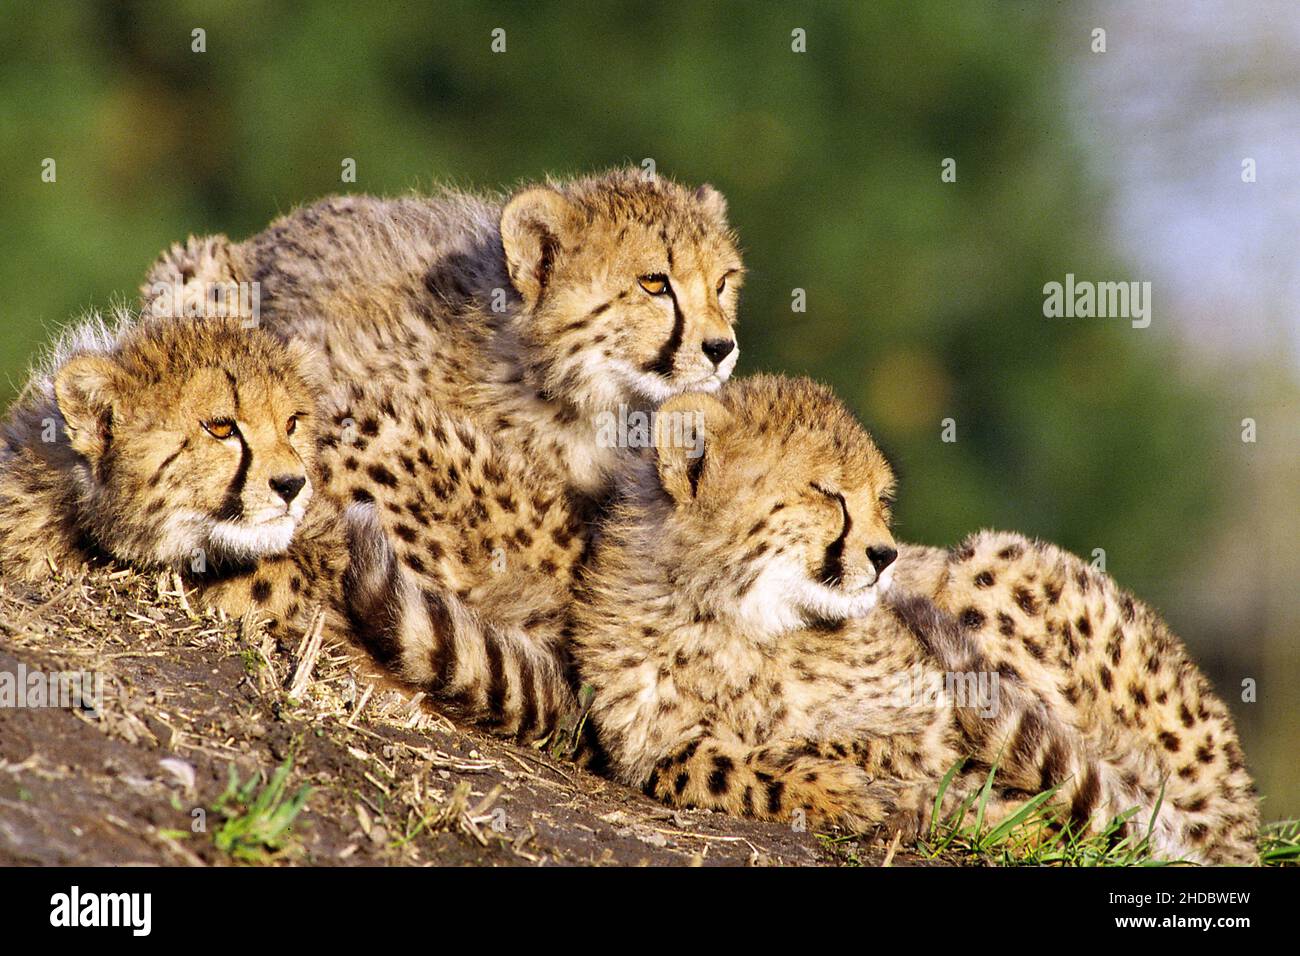 Drei junge Geparden geniessen die Sonne, Afrika, Cheetah, Stock Photo